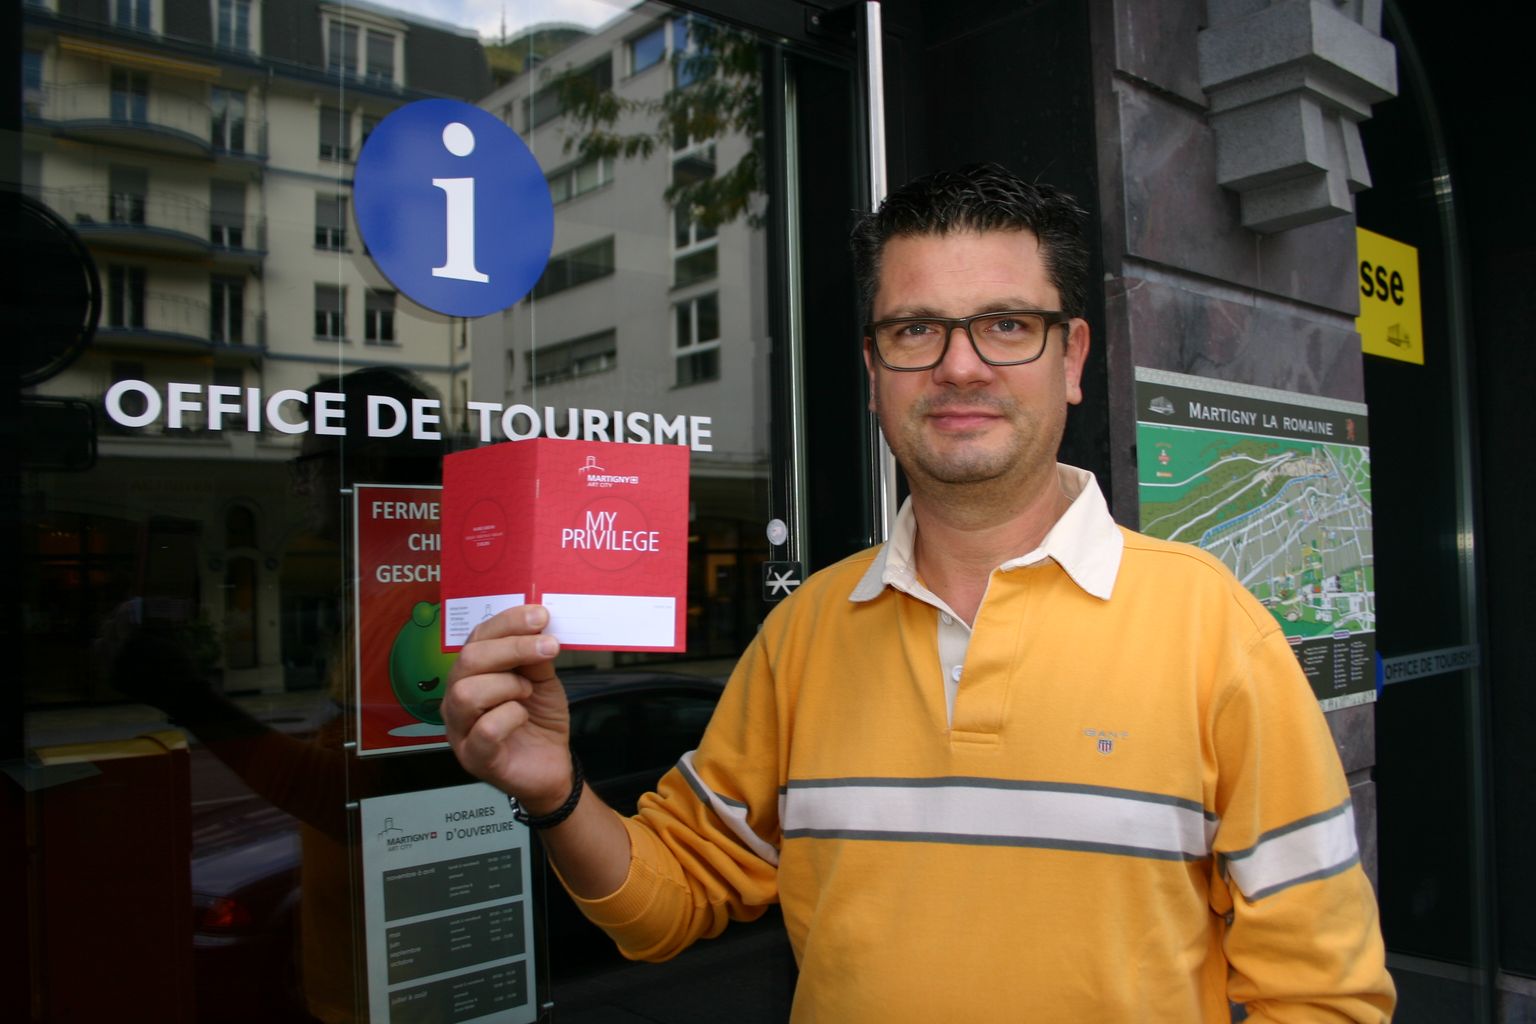 Le directeur Fabian Claivaz présente la nouvelle offre de Martigny Touriste: "My privilege".